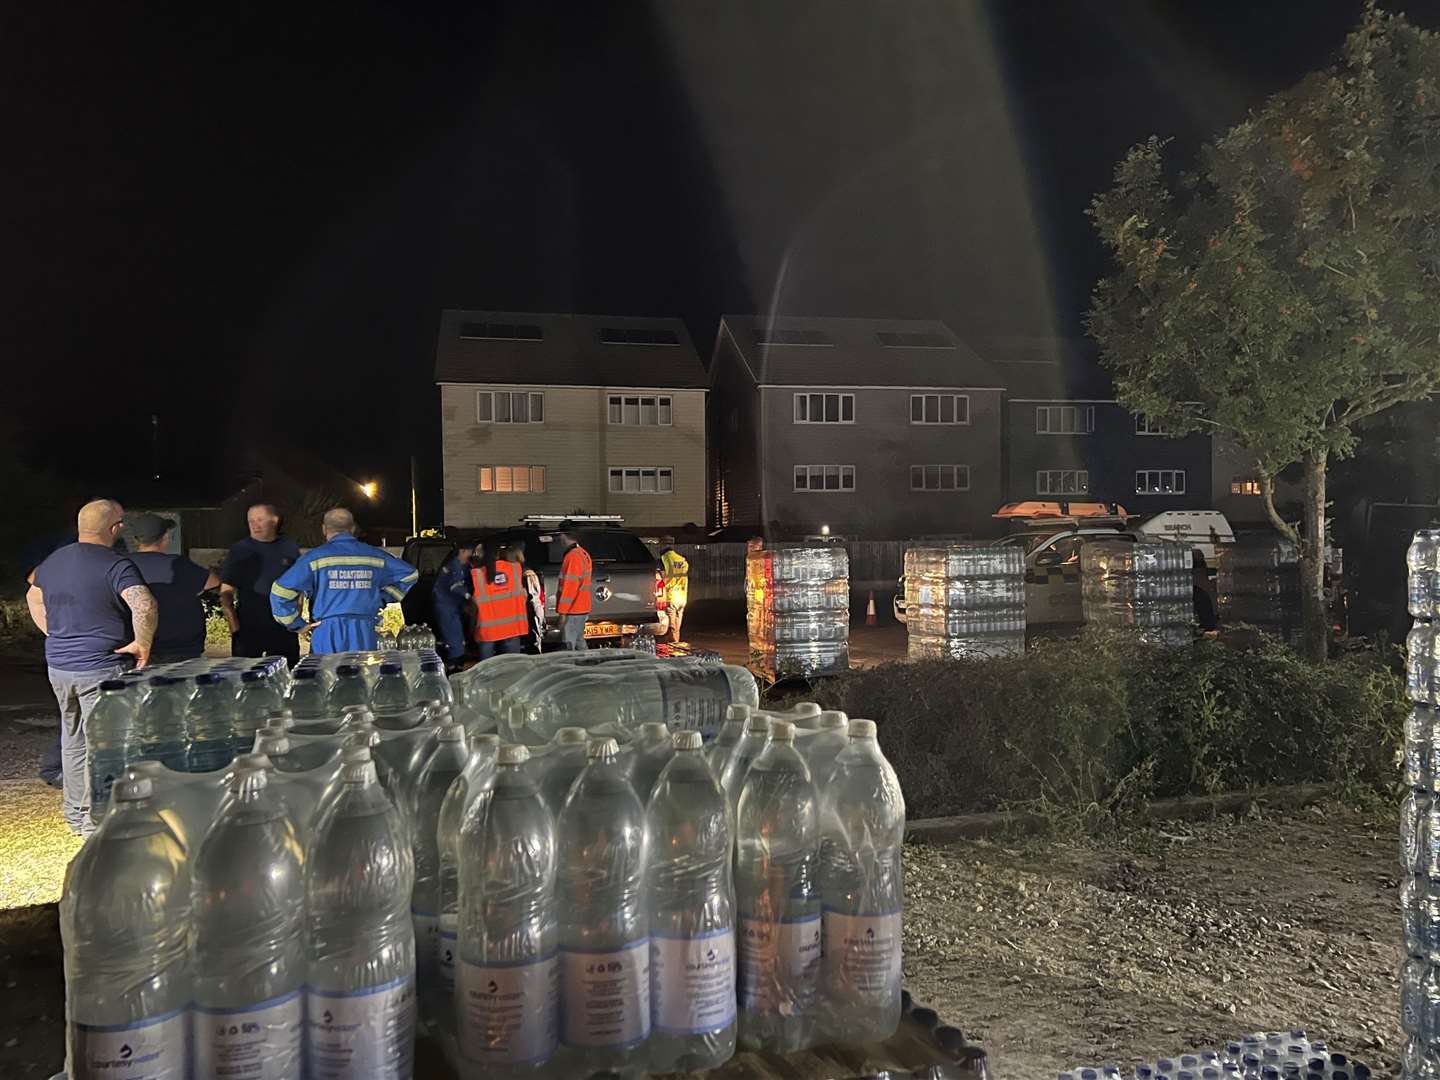 15 South East 4x4 Response volunteers helped distribute water last night